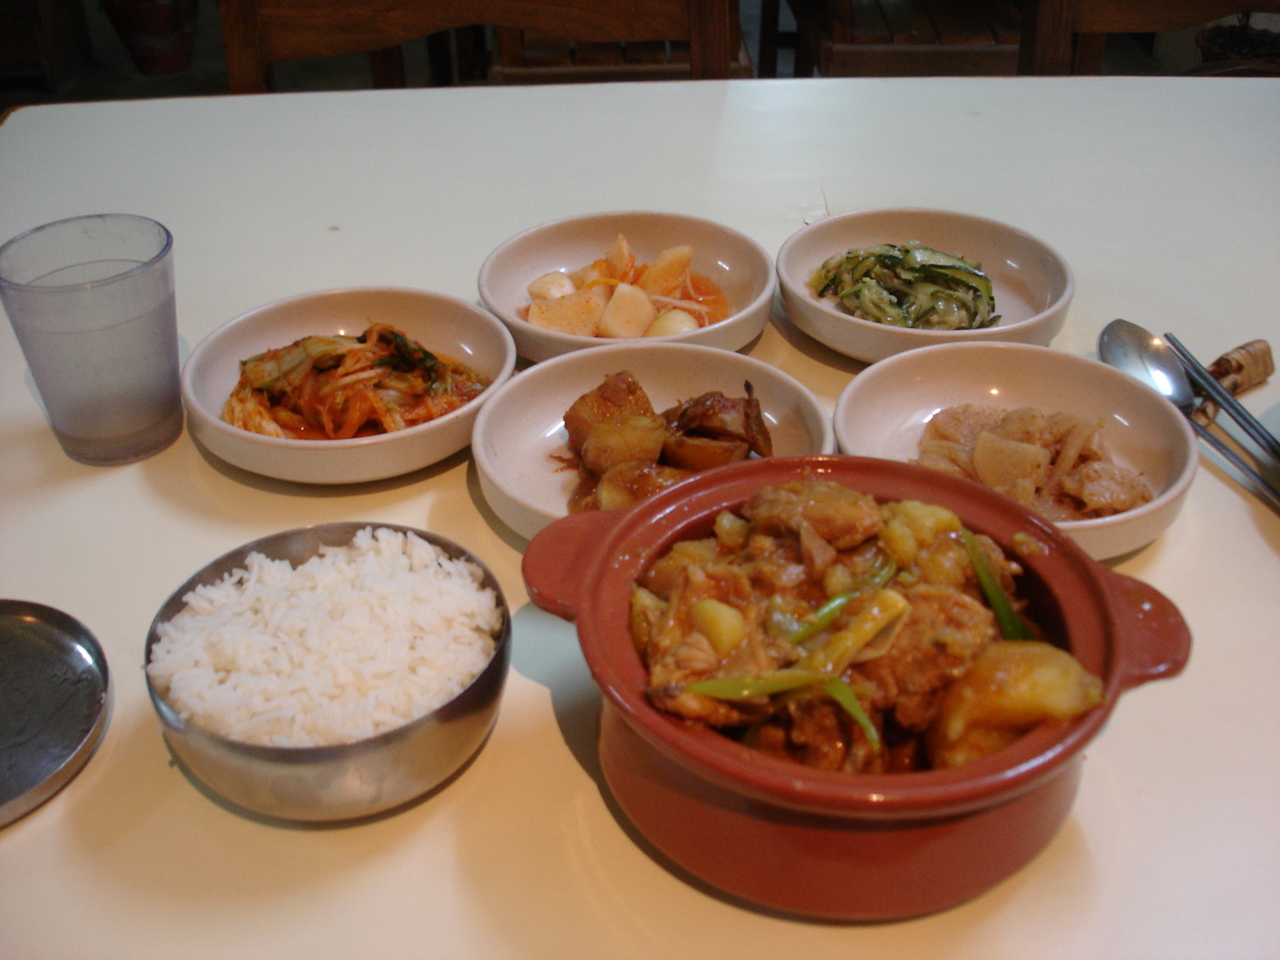 '한국사랑'에서 먹은 닭도리탕. 네팔에서 이런 음식을 만난다는 건 .. 정말.. ㅡㅜ